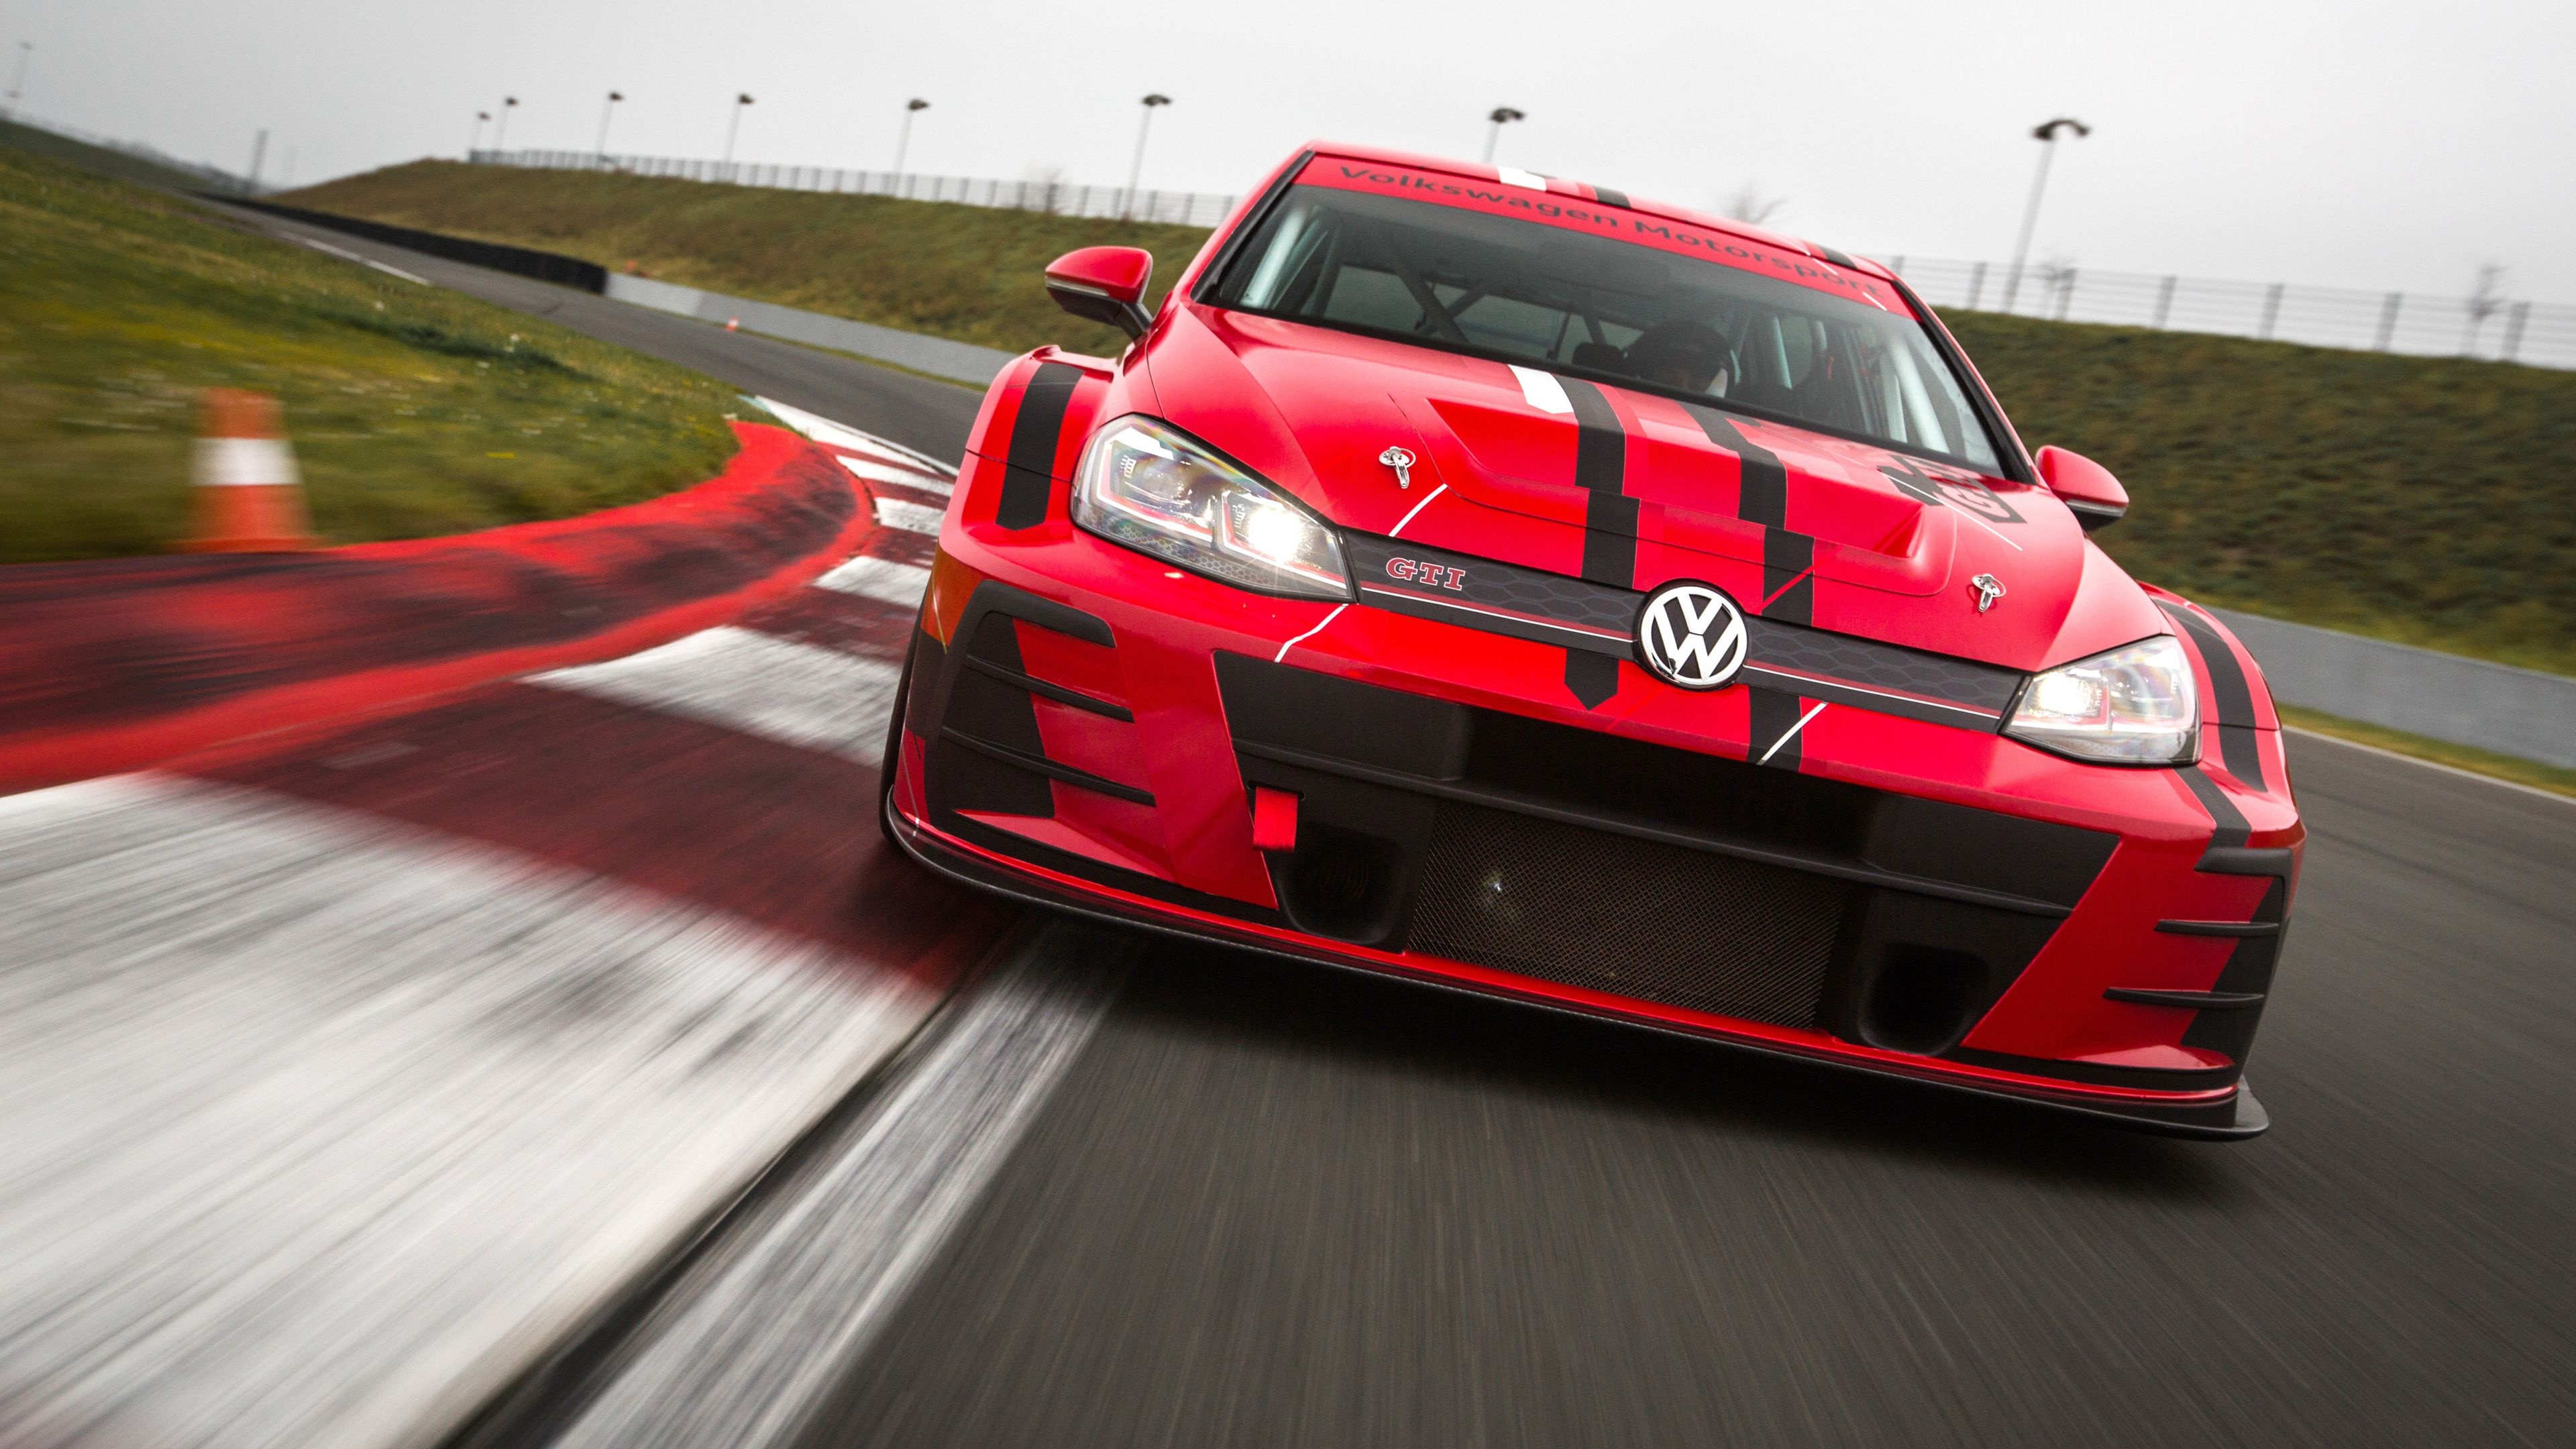 Volkswagen Golf GTI TCR, Type 5G, Racing-inspired, Exceptional handling, 3840x2160 4K Desktop